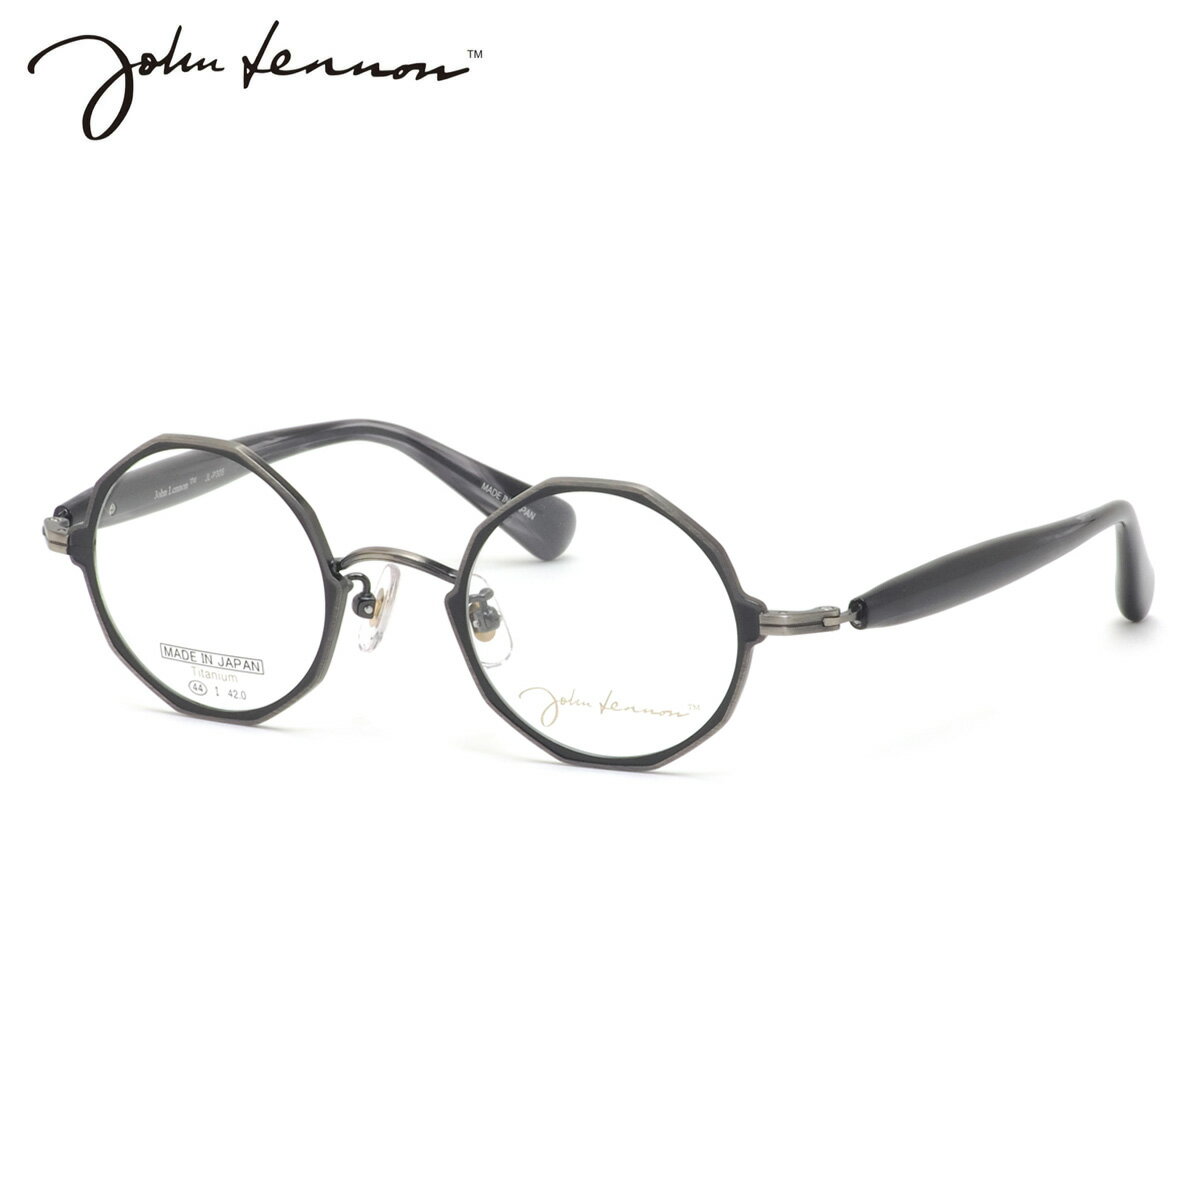 ジョンレノン JL-P308 4 44 メガネ John Lennon プレミアム デカゴン 10角形 日本製 国産 ビートルズ オノヨーコ 丸眼鏡 メンズ レディース